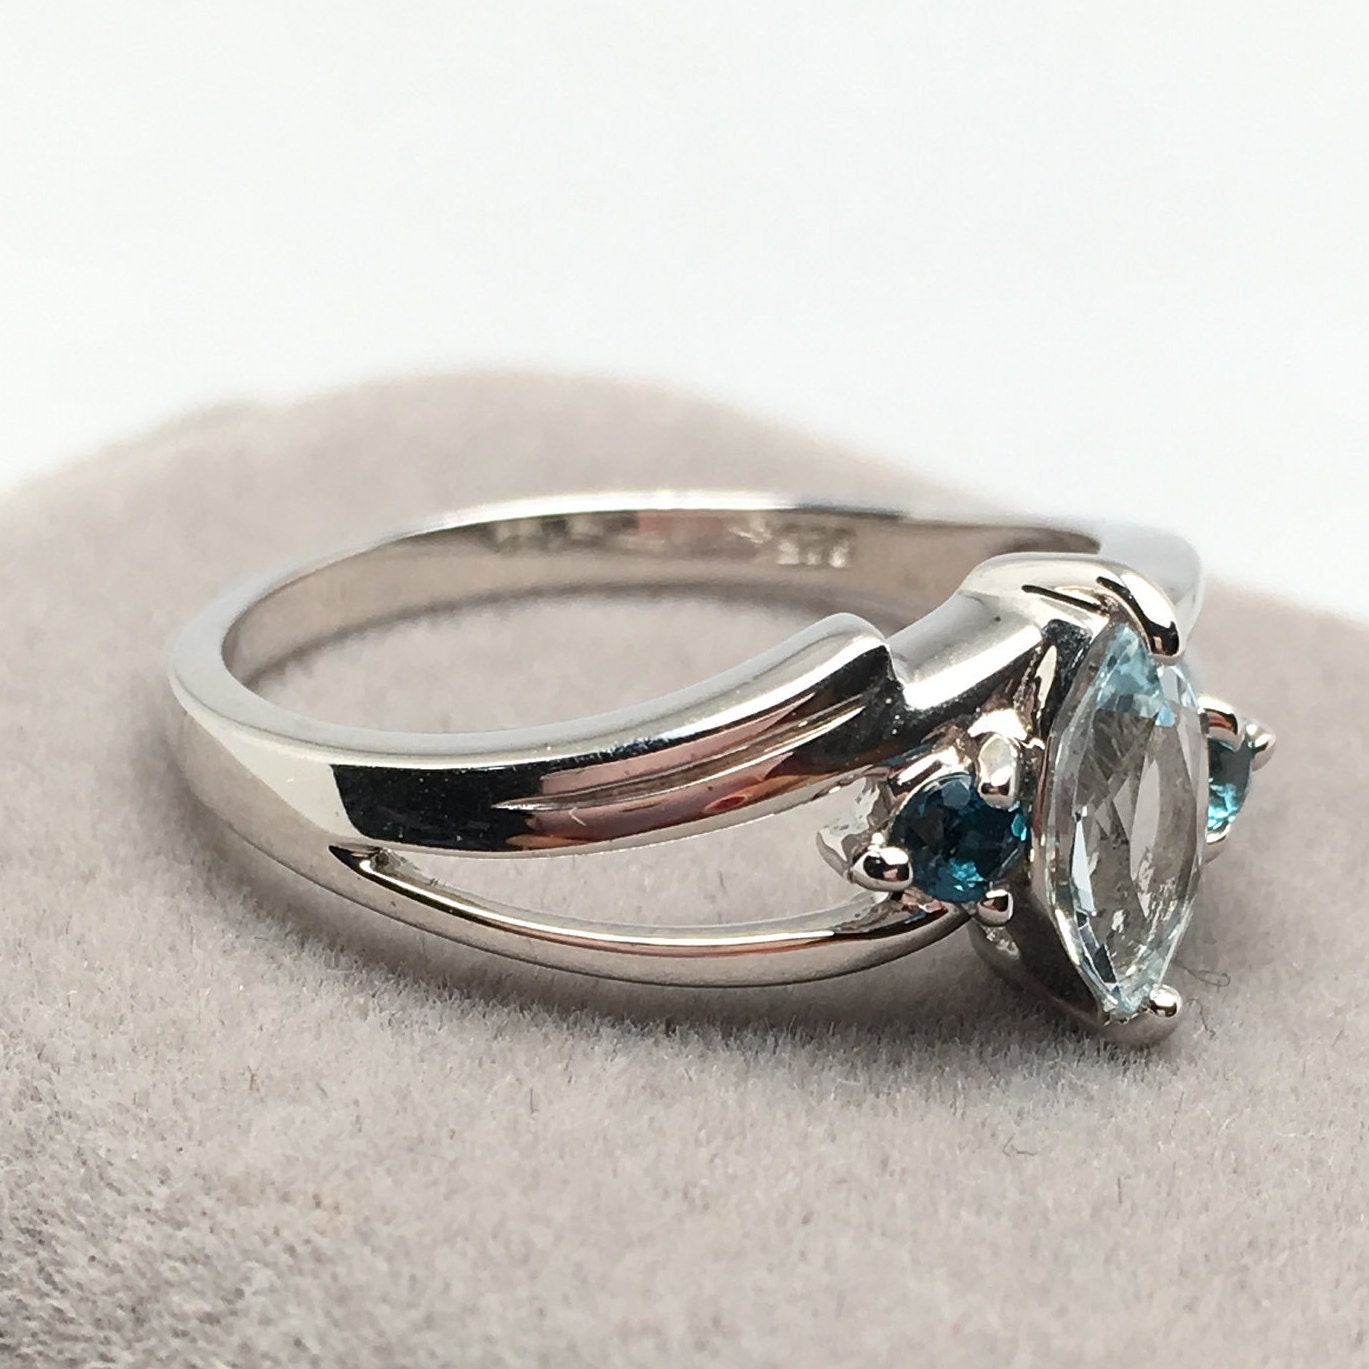 Sky Blue Topaz aquamarine Colortopaz Ring blue Topaz Jewelry | Etsy